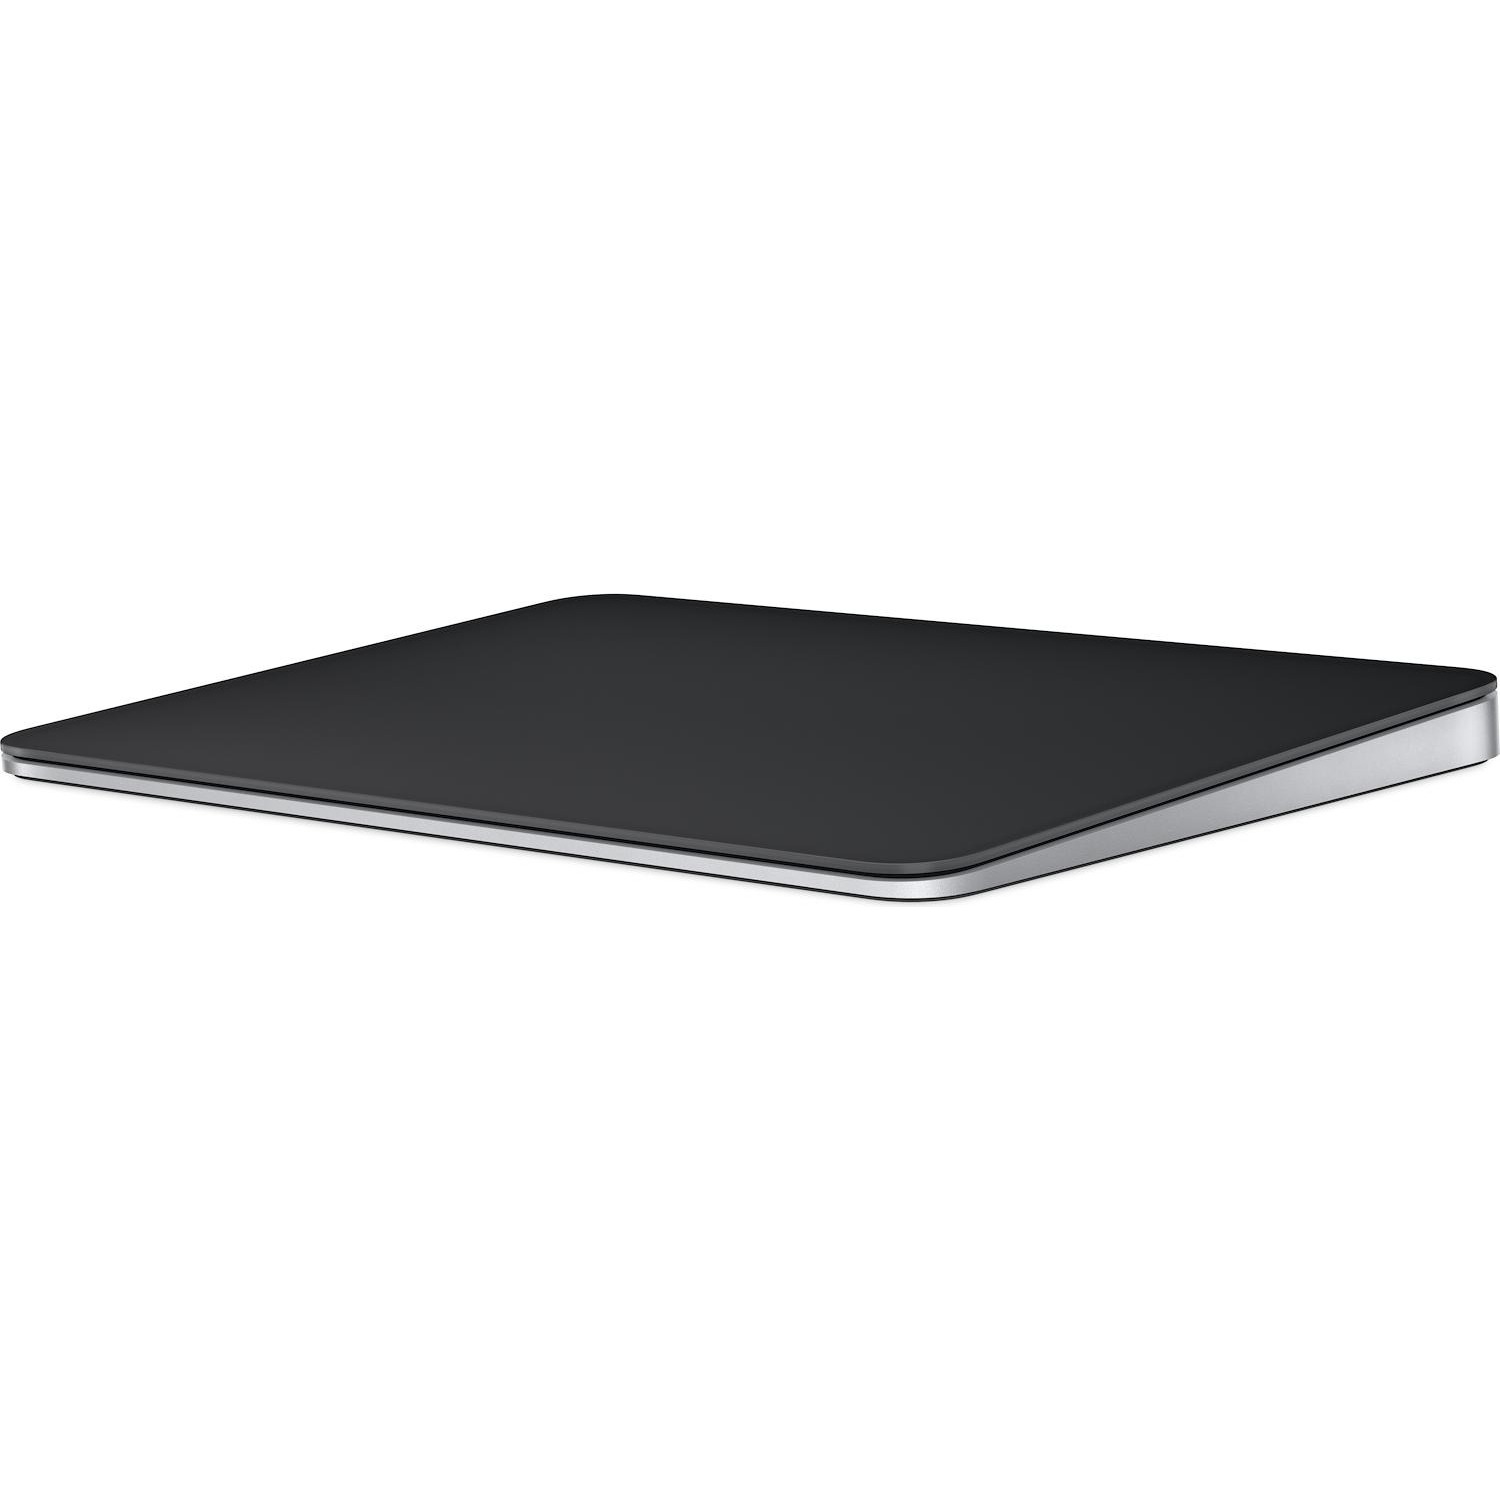 Immagine per Pad Apple Magic Trackpad nero multi touch Surface da DIMOStore